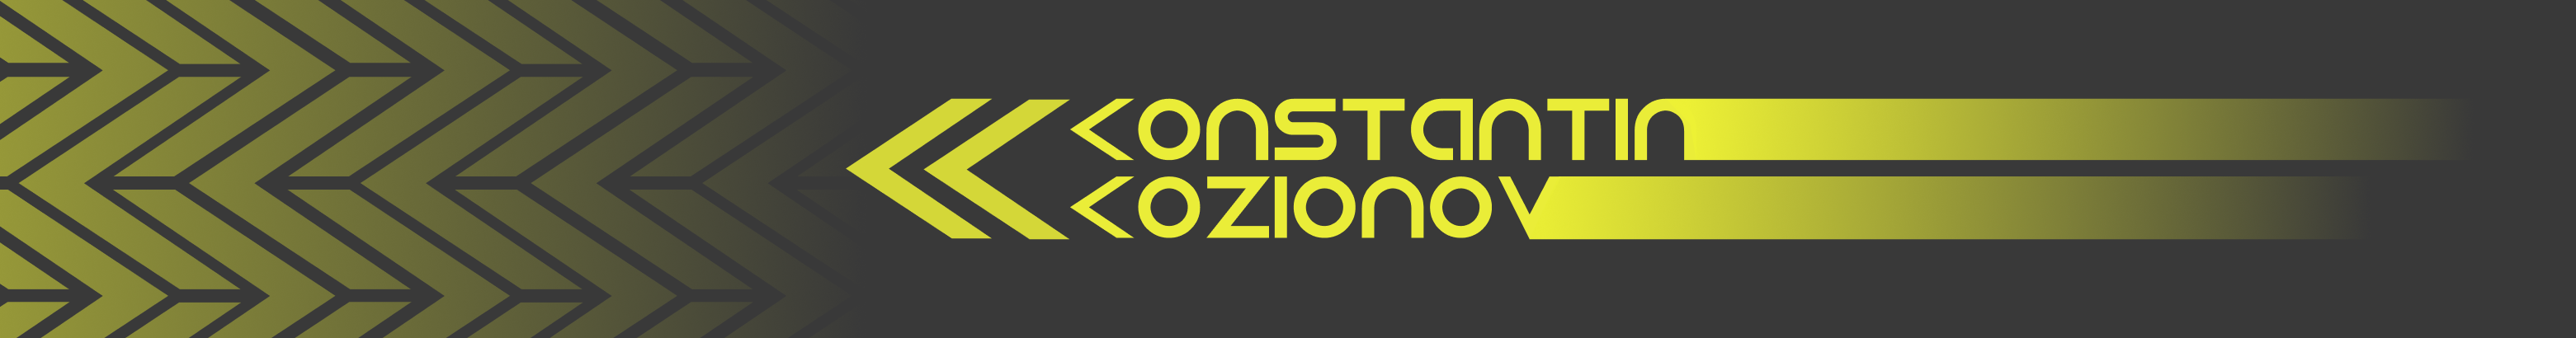 Profil-Banner von Konstantin Kozionov